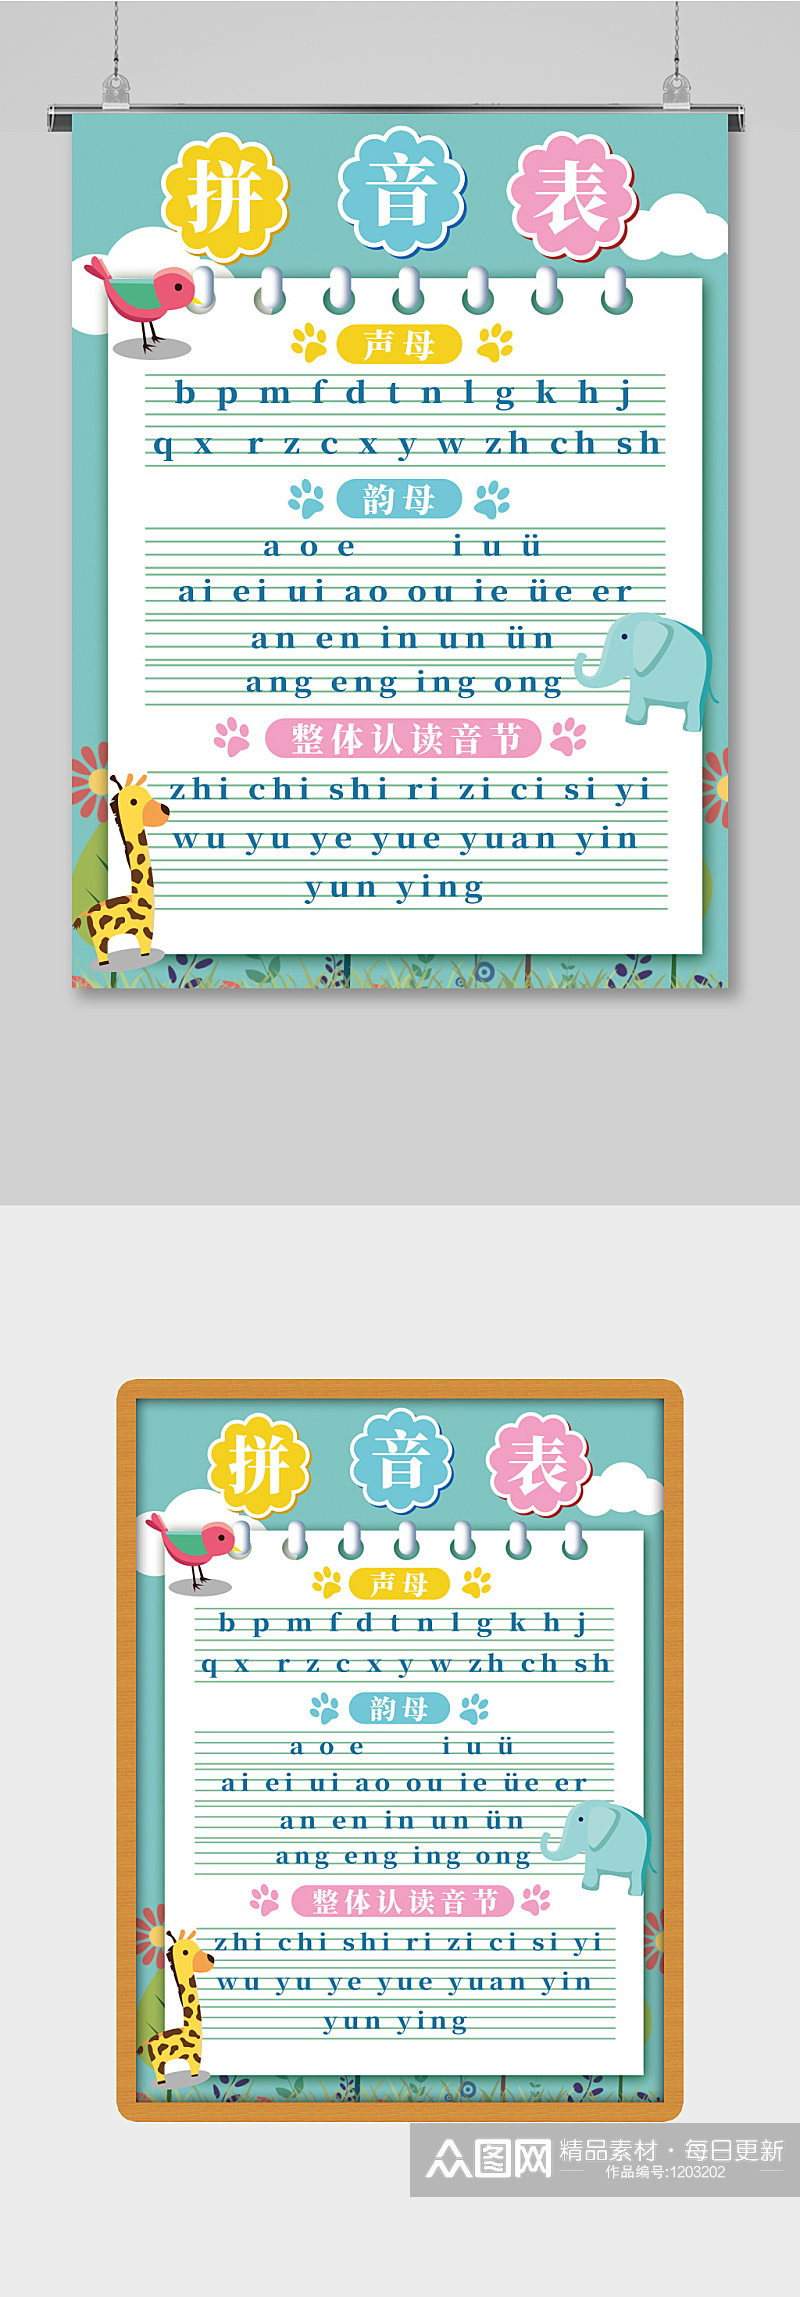 简约风格汉语拼音字母表海报素材